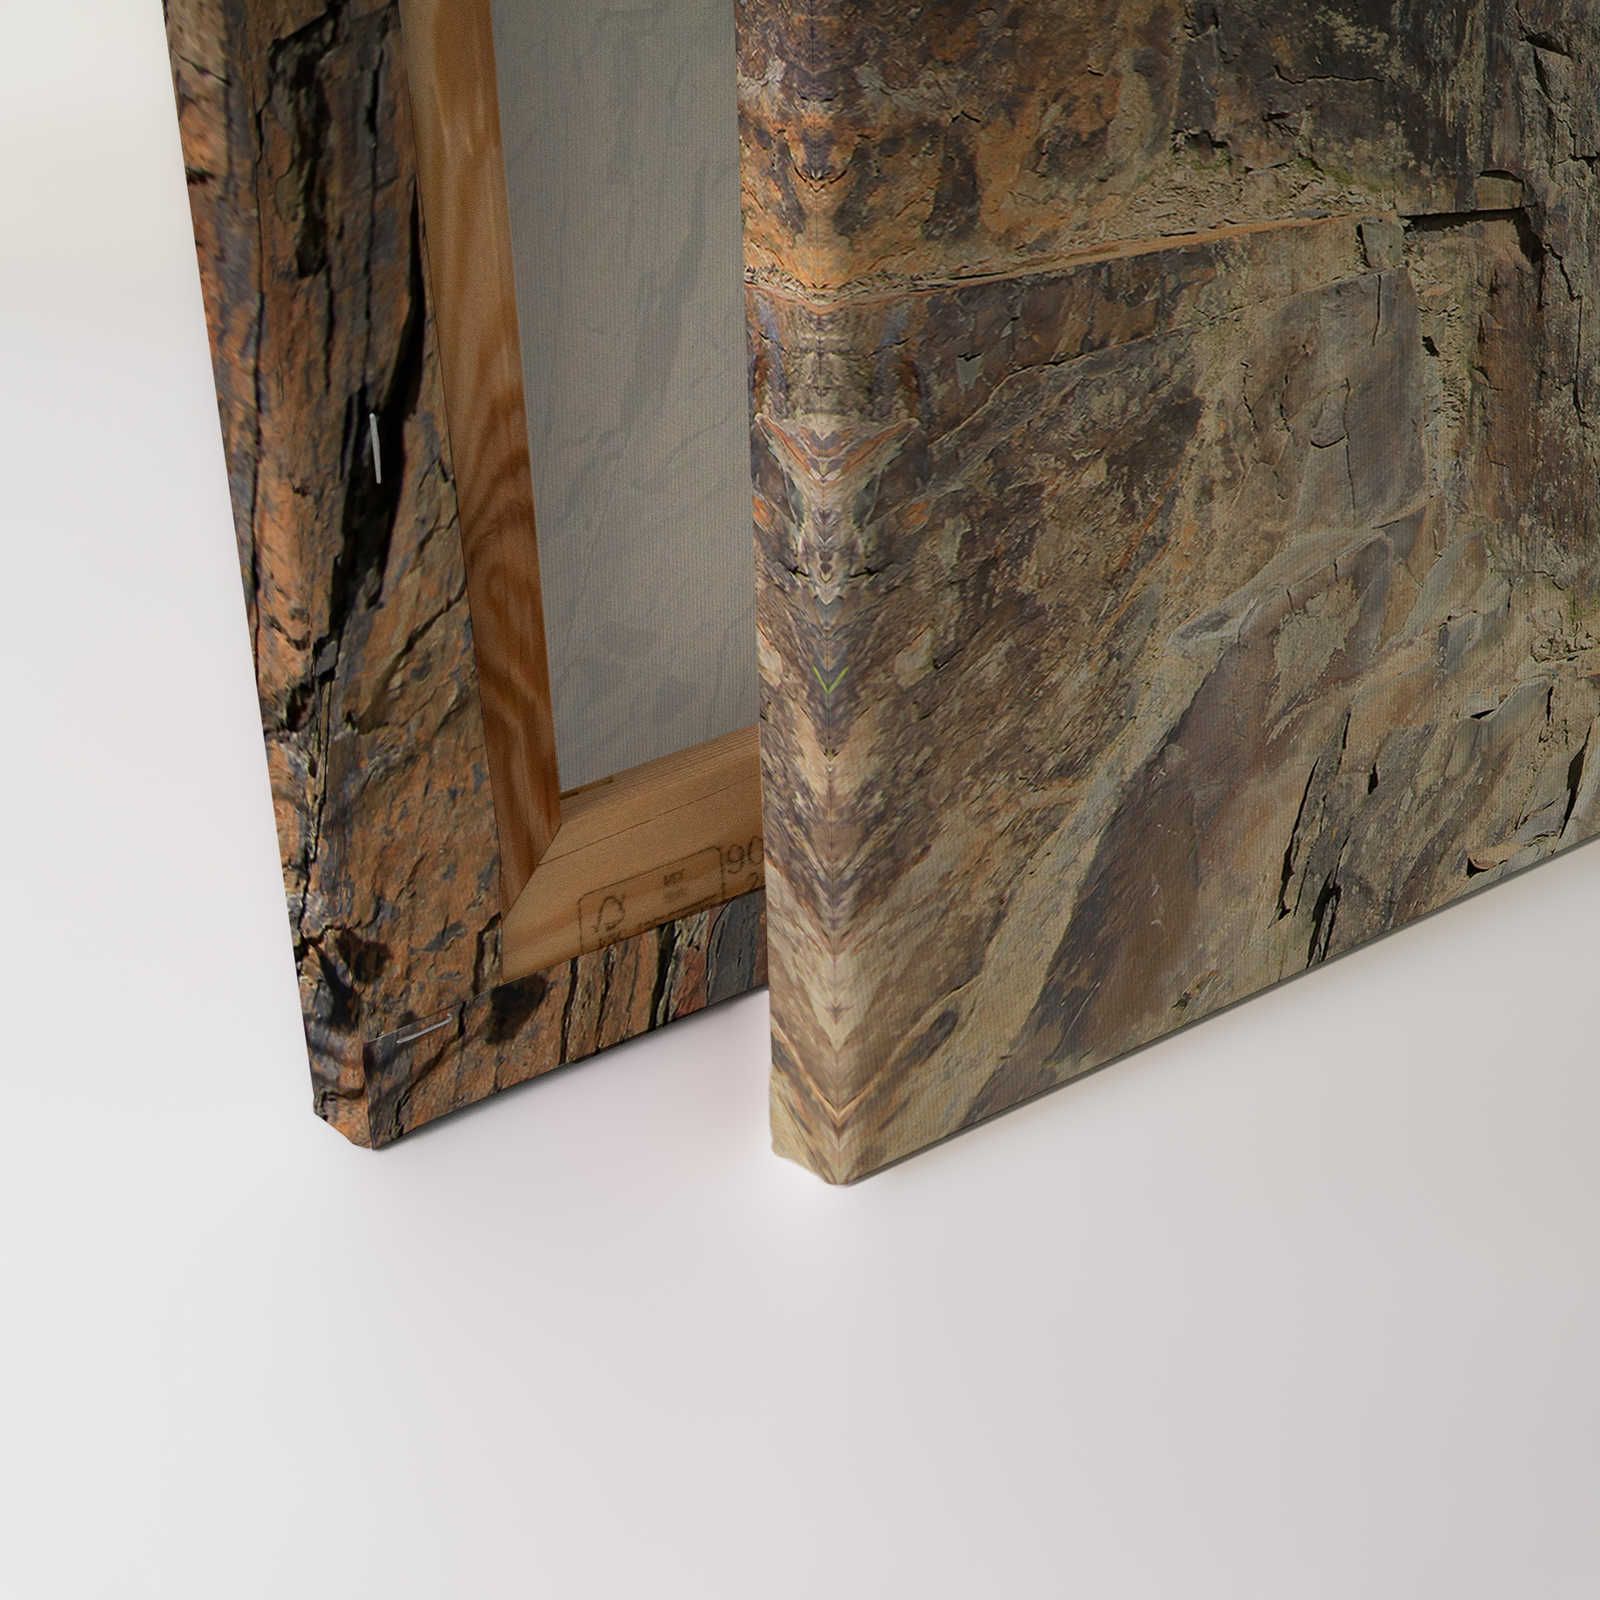             Tableau toile aspect pierre effet 3D, mur en pierre naturelle - 0,90 m x 0,60 m
        